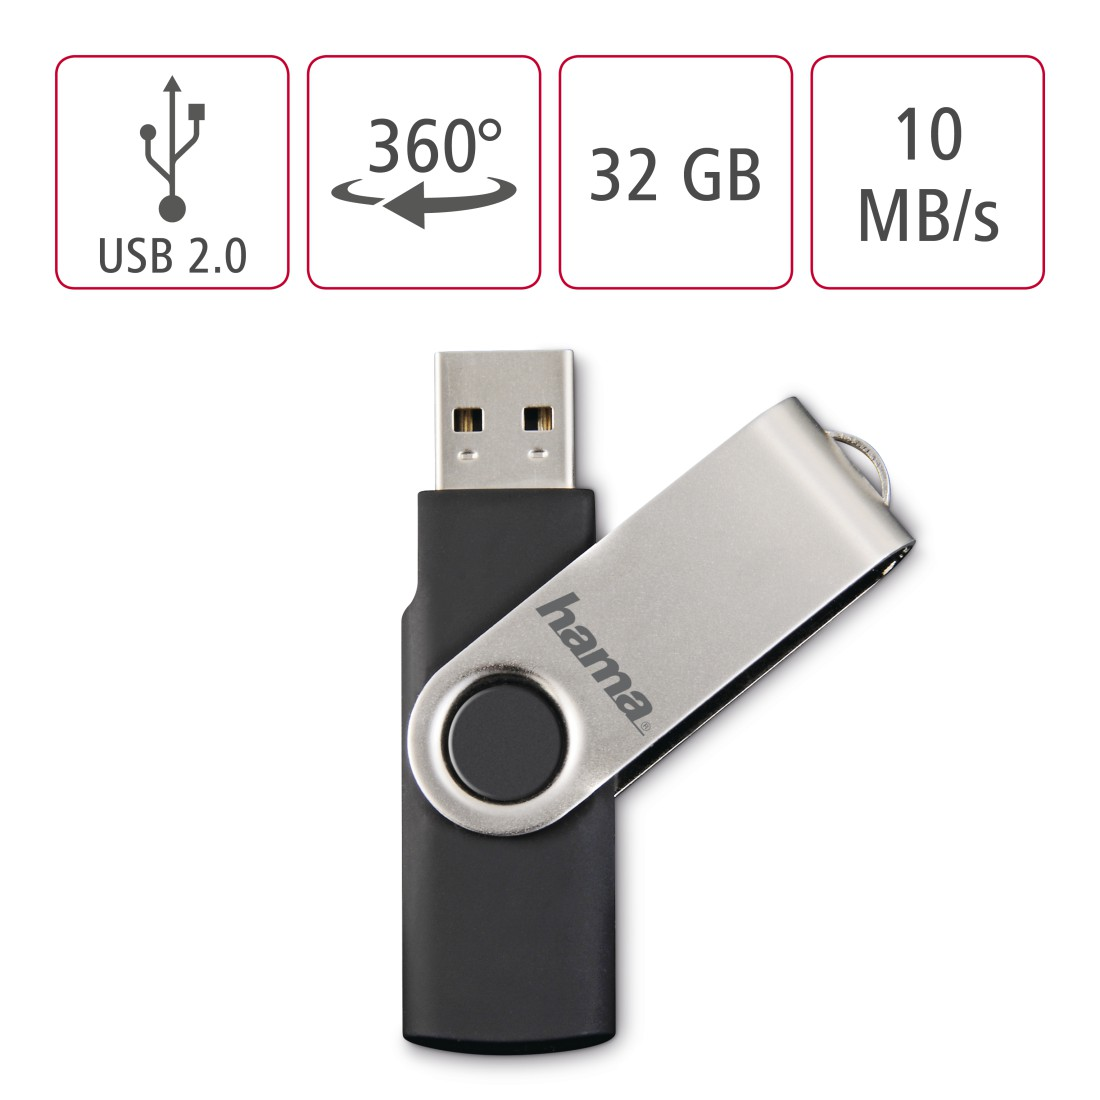 GB, Schwarz/Silber Rotate 10 MB/s, 32 USB-Stick, HAMA